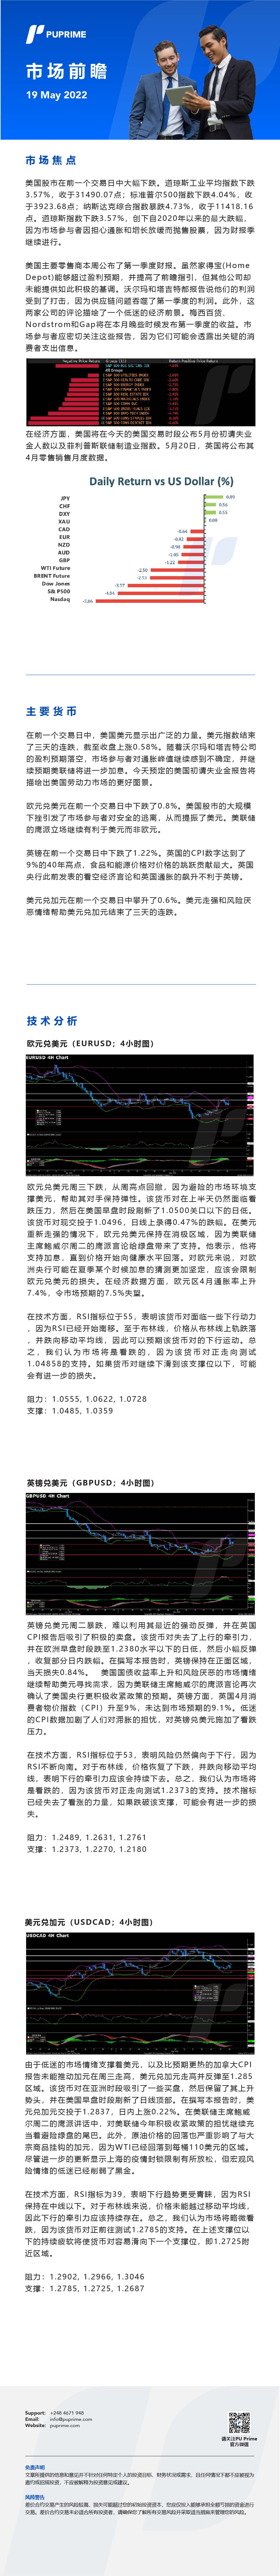 19052022 Daily Market Analysis__CHN.jpg